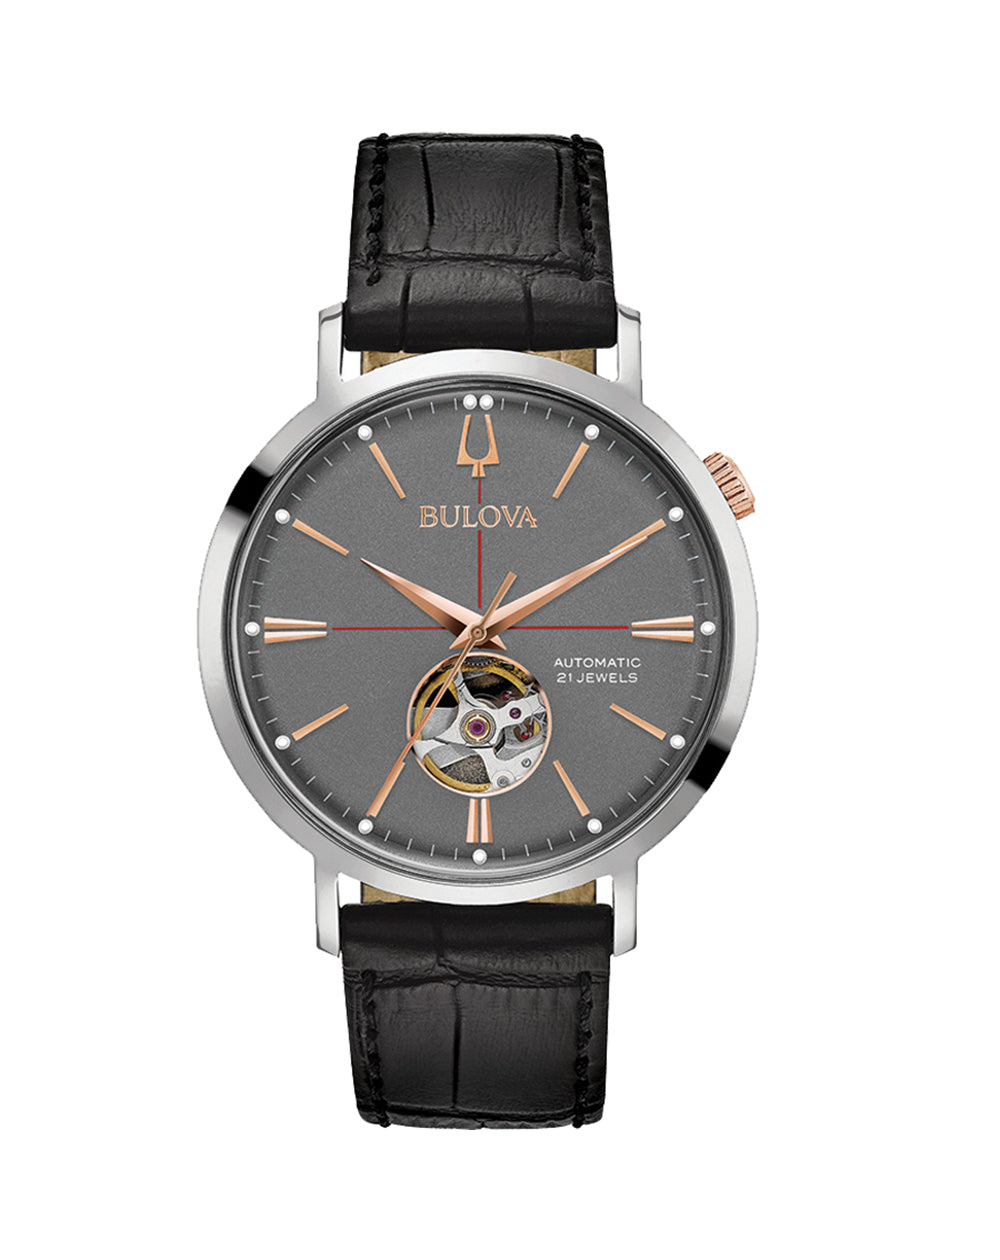 96A170 Bulova Men's Classic Automatic Watch